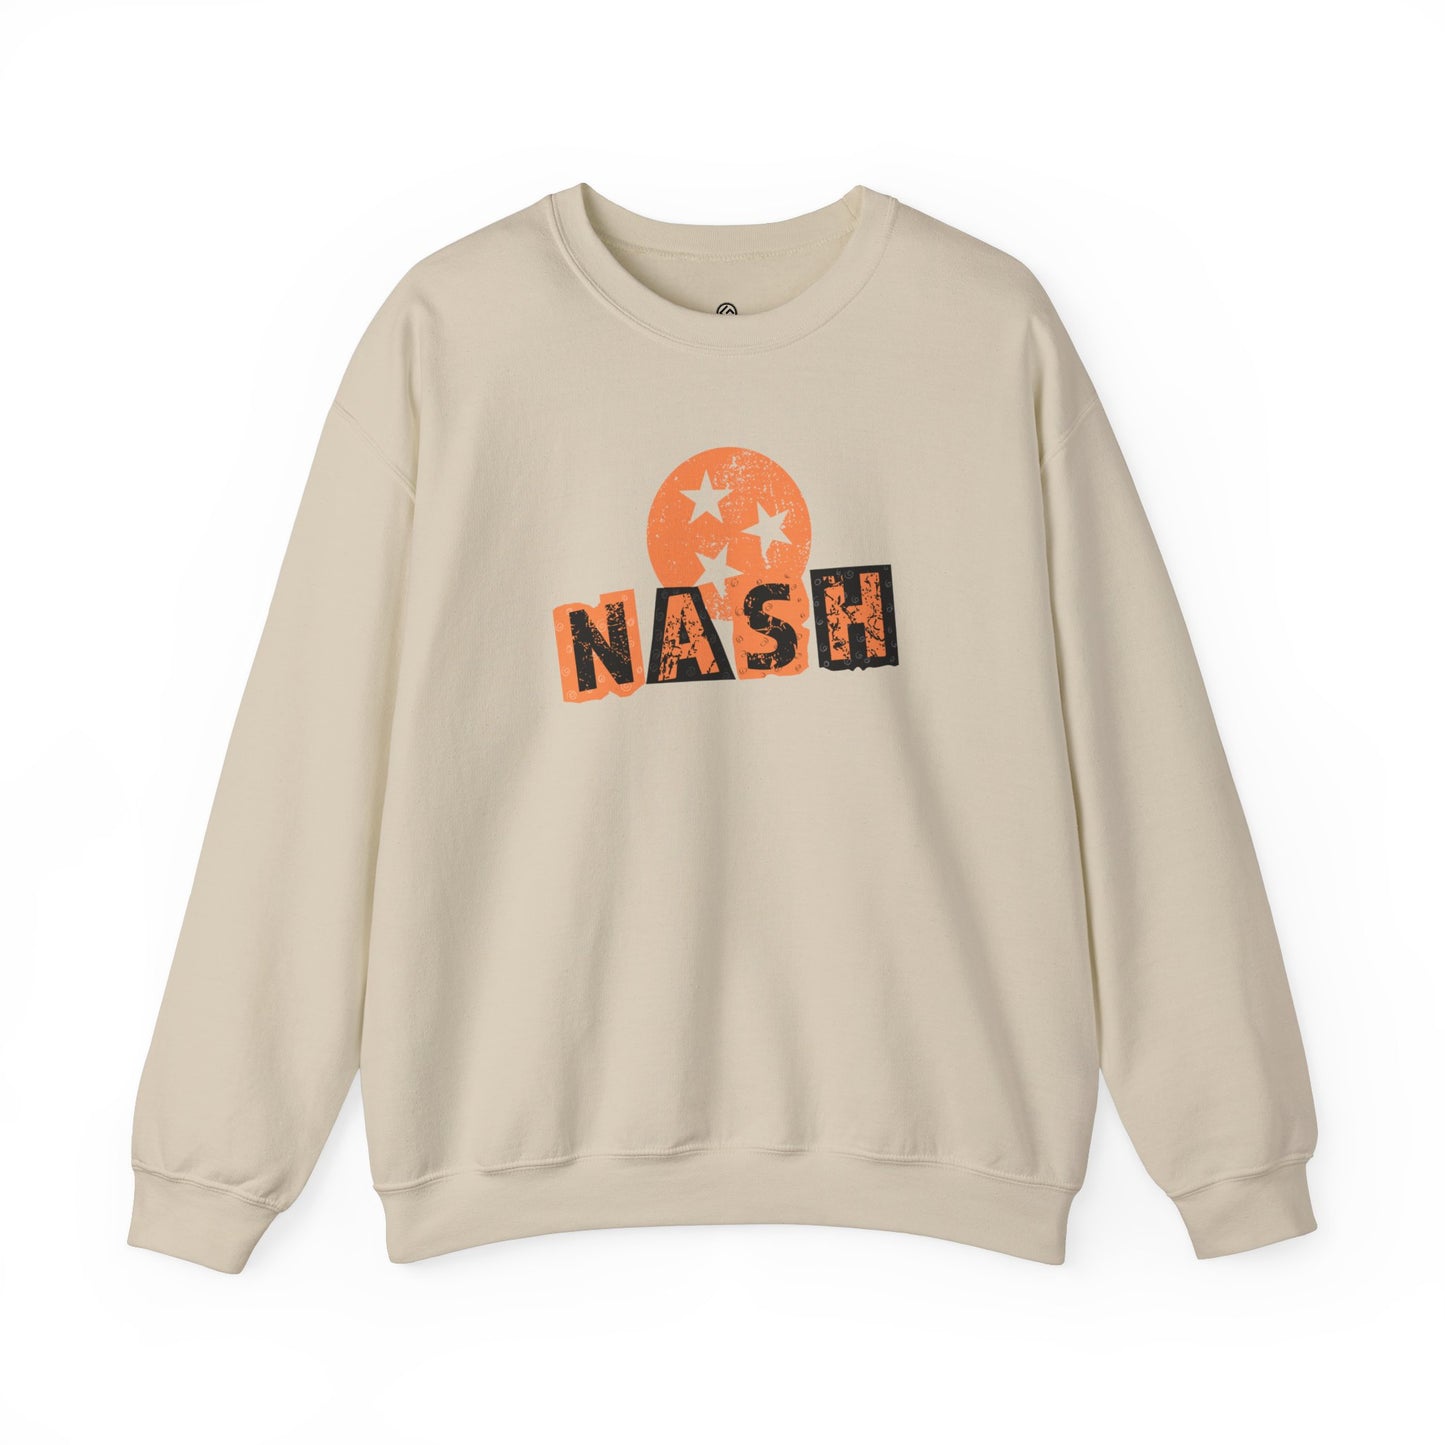 Nash TN Crewneck Sweatshirt